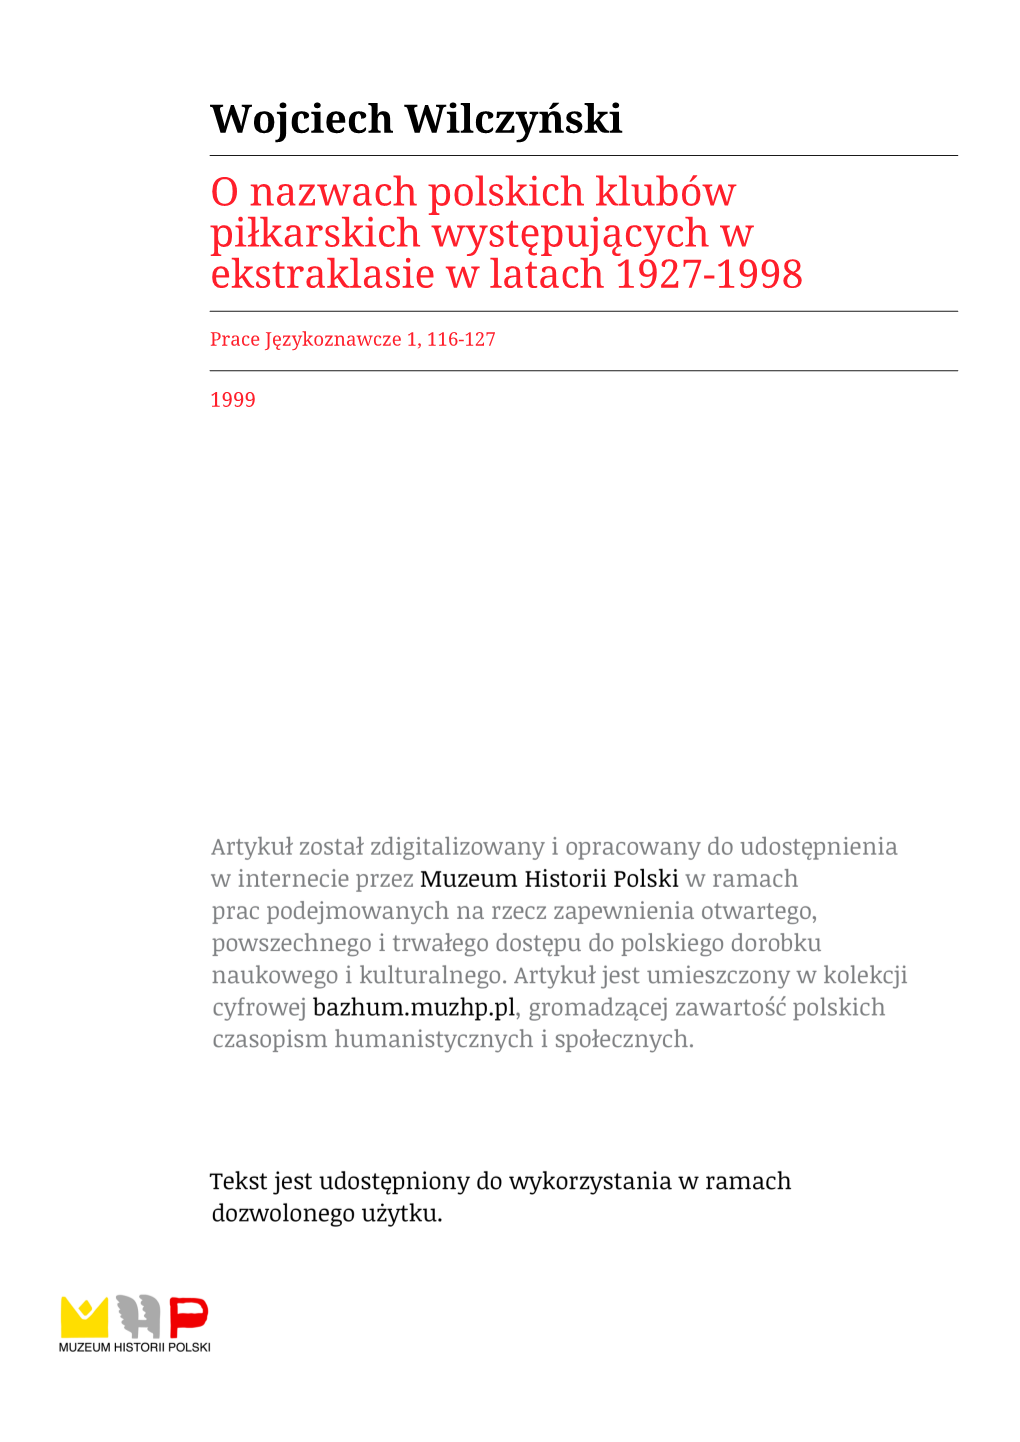 Wojciech Wilczyński O Nazwach Polskich Klubów Piłkarskich Występujących W Ekstraklasie W Latach 1927-1998